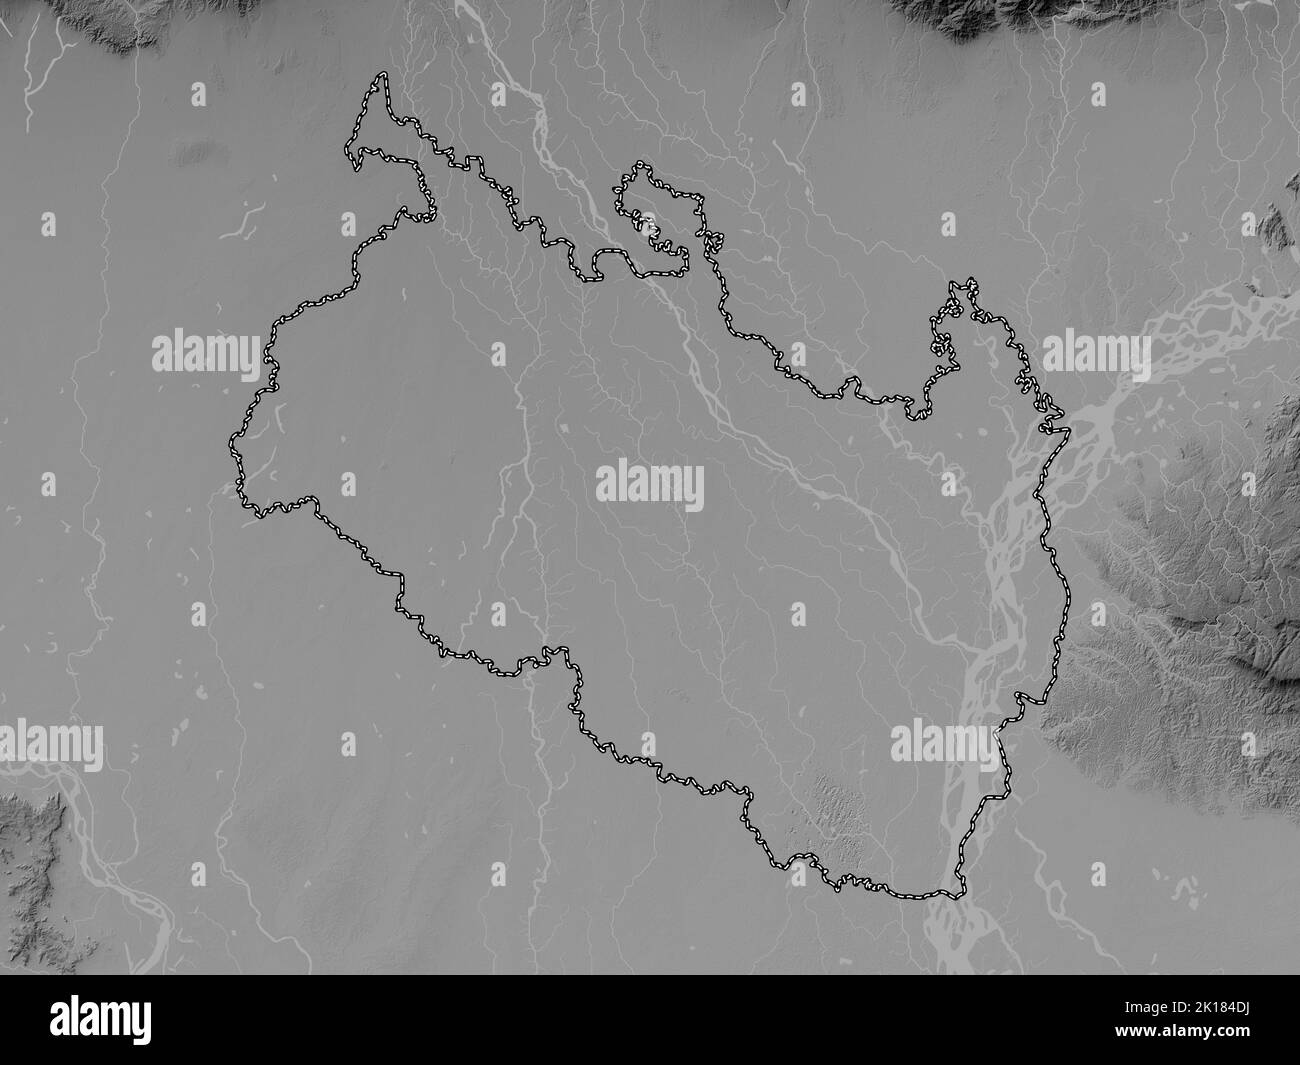 Rangpur, division du Bangladesh. Carte d'altitude en niveaux de gris avec lacs et rivières Banque D'Images